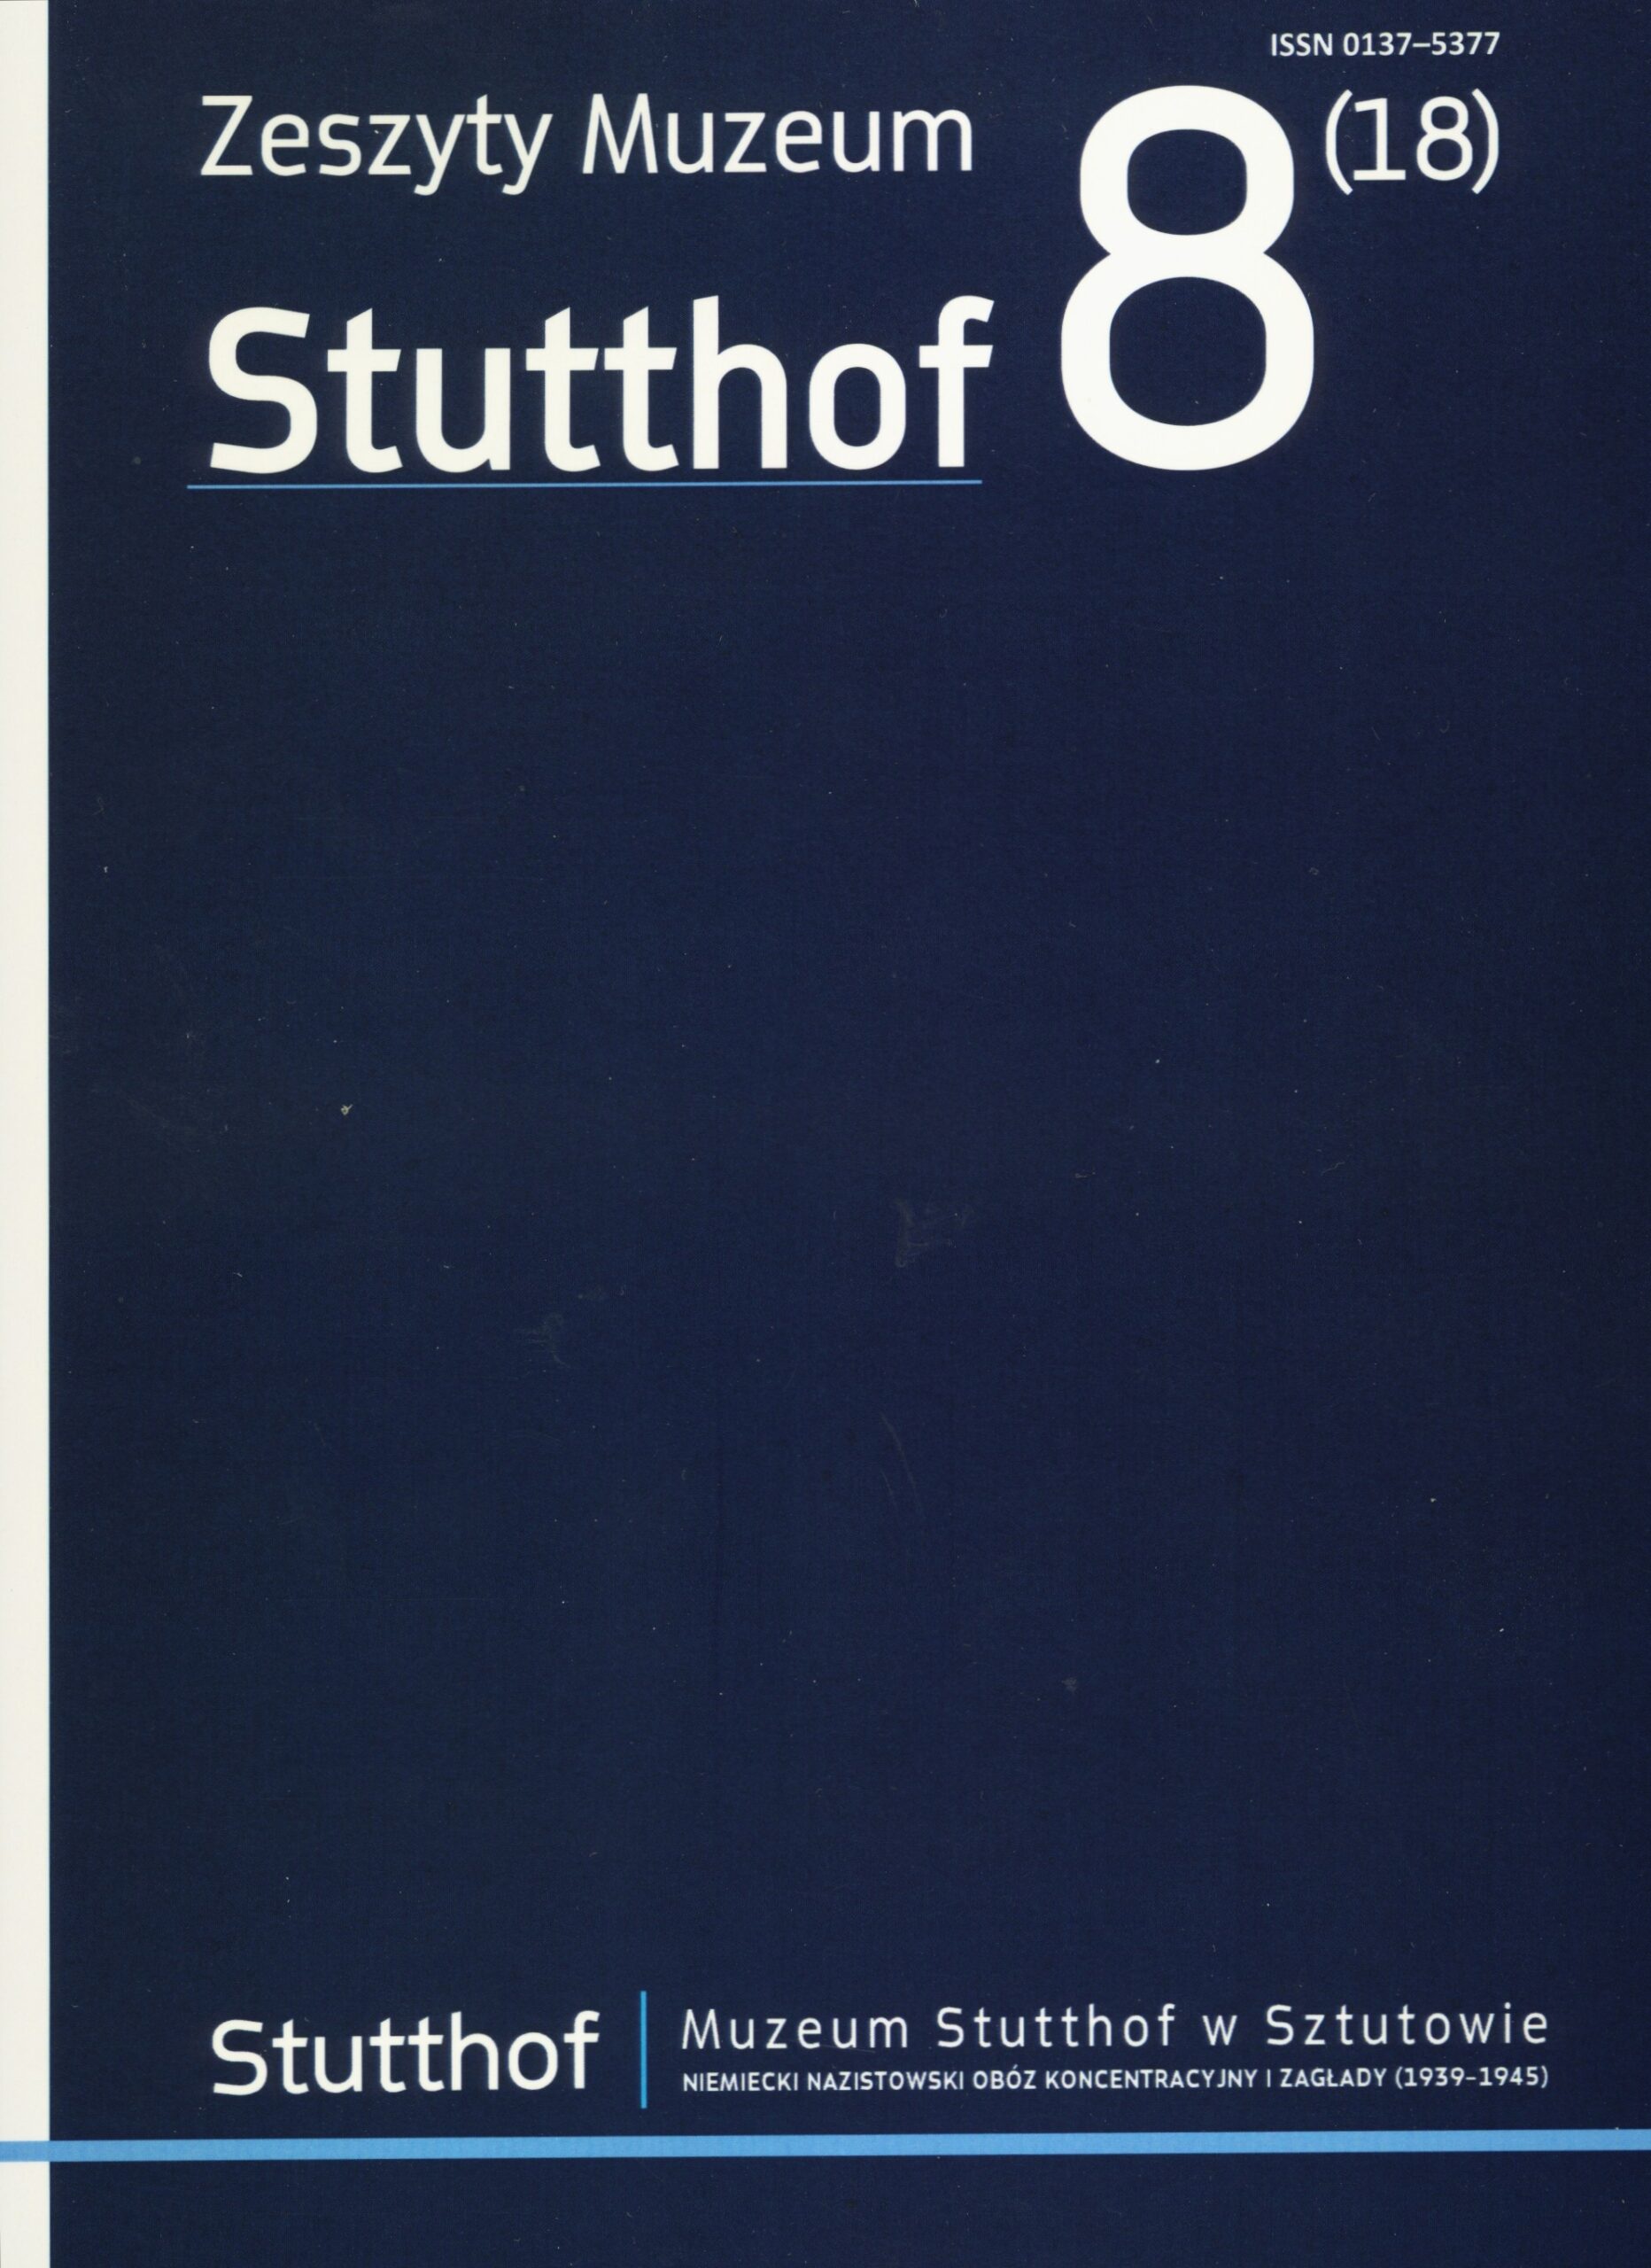 Okładka publikacji Zeszyty Muzeum  Stutthof nr 8(18)